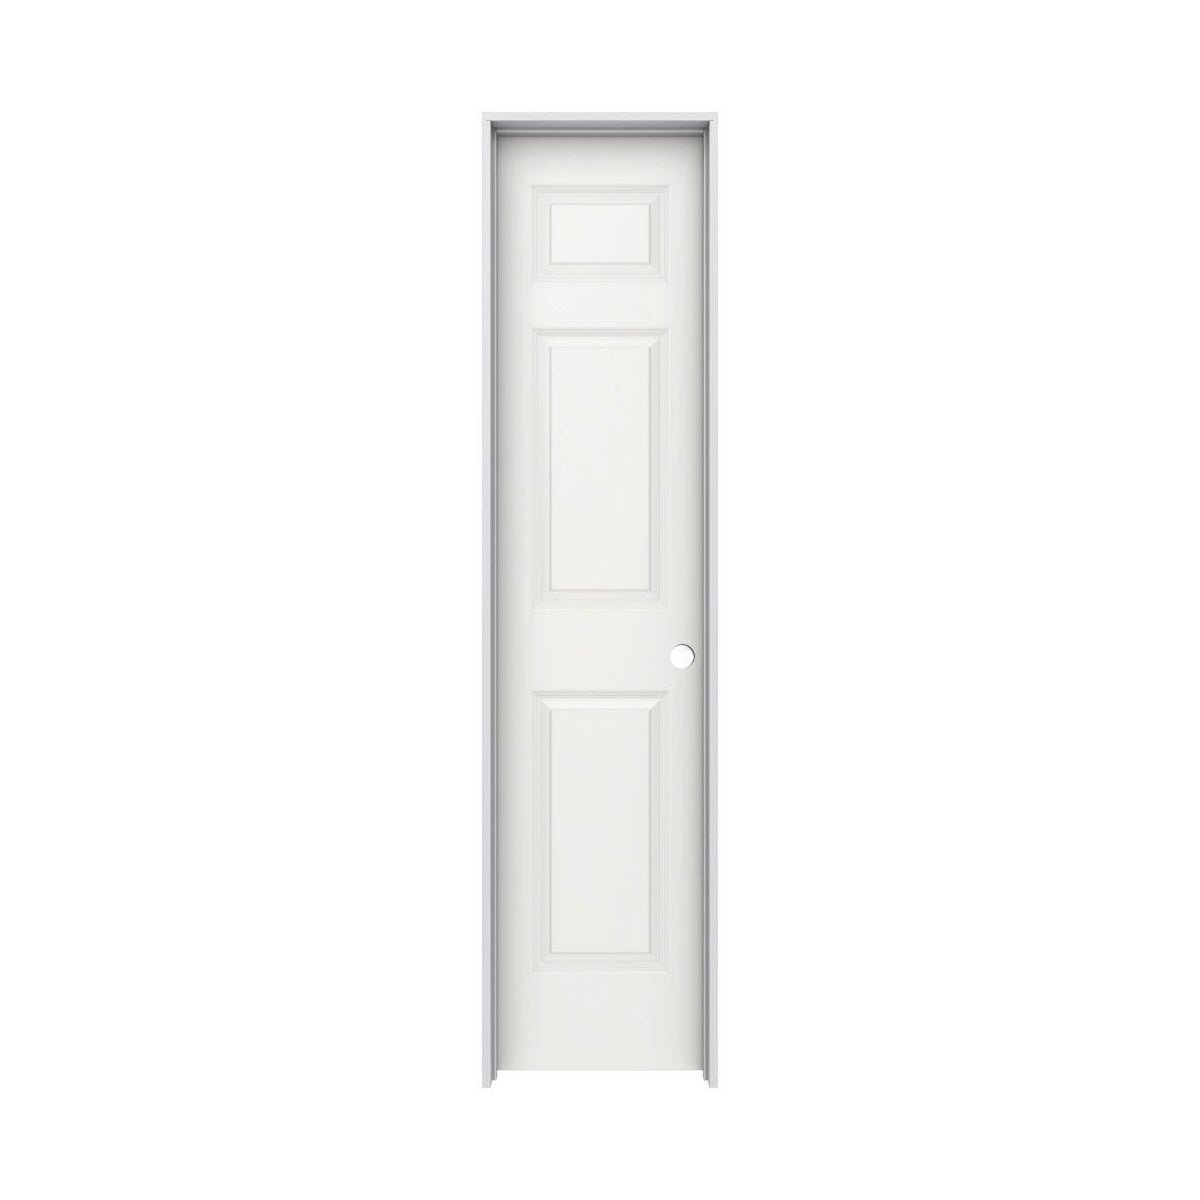 DOOR-LEFT-22"-6 PANEL-PRE-HUNG-4-1/2" JAMB